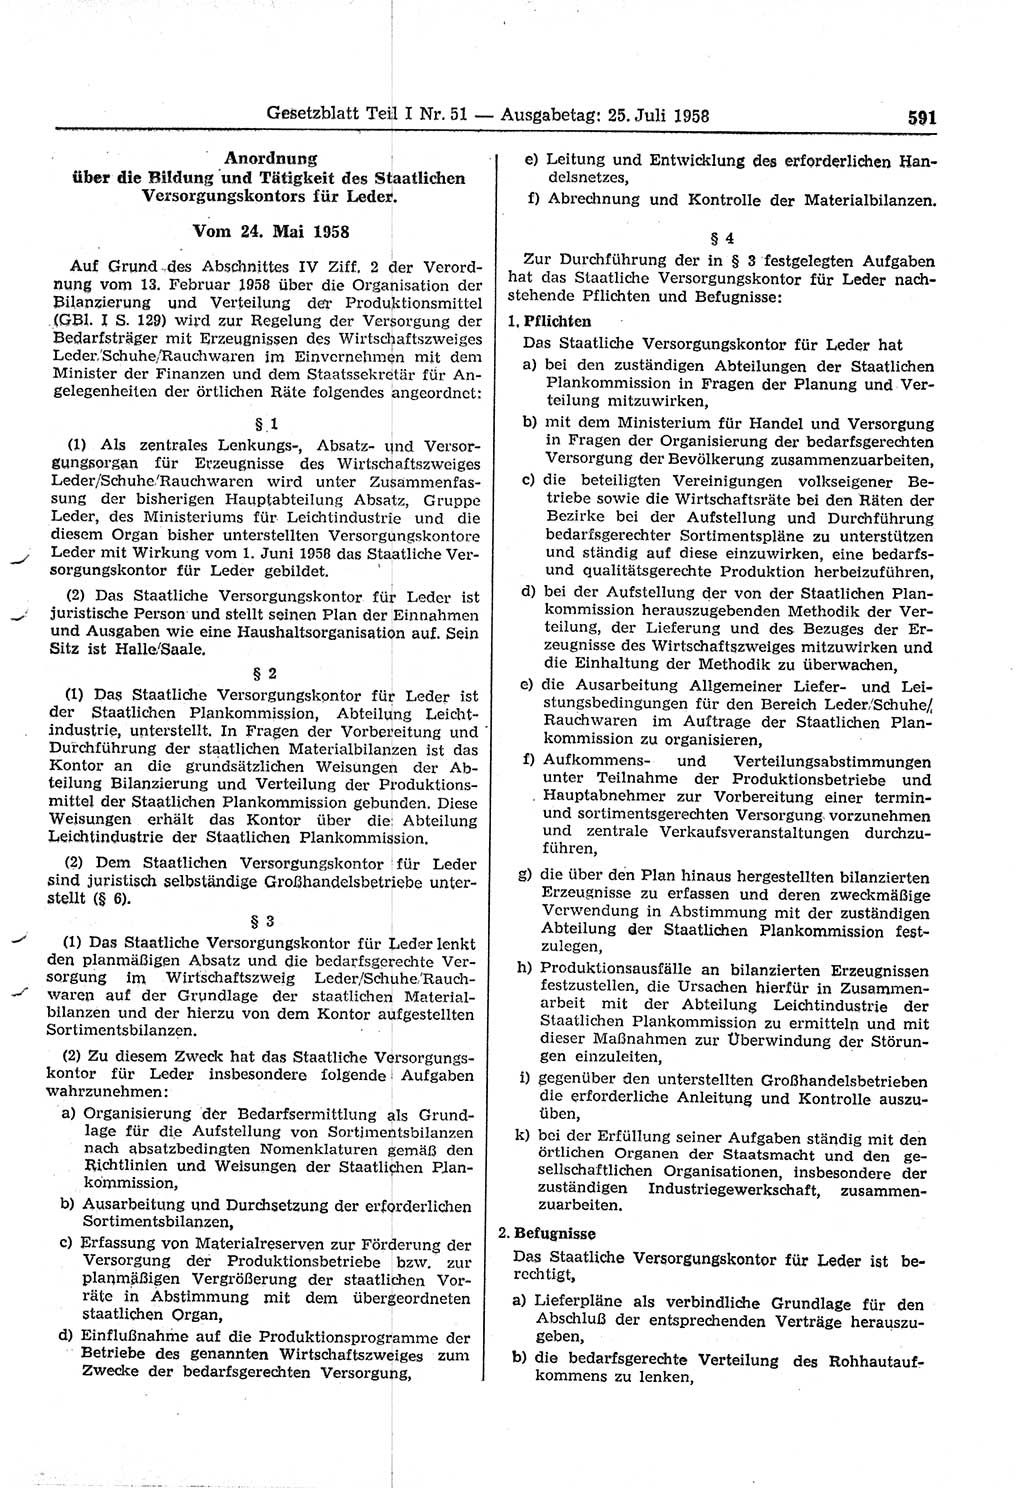 Gesetzblatt (GBl.) der Deutschen Demokratischen Republik (DDR) Teil Ⅰ 1958, Seite 591 (GBl. DDR Ⅰ 1958, S. 591)